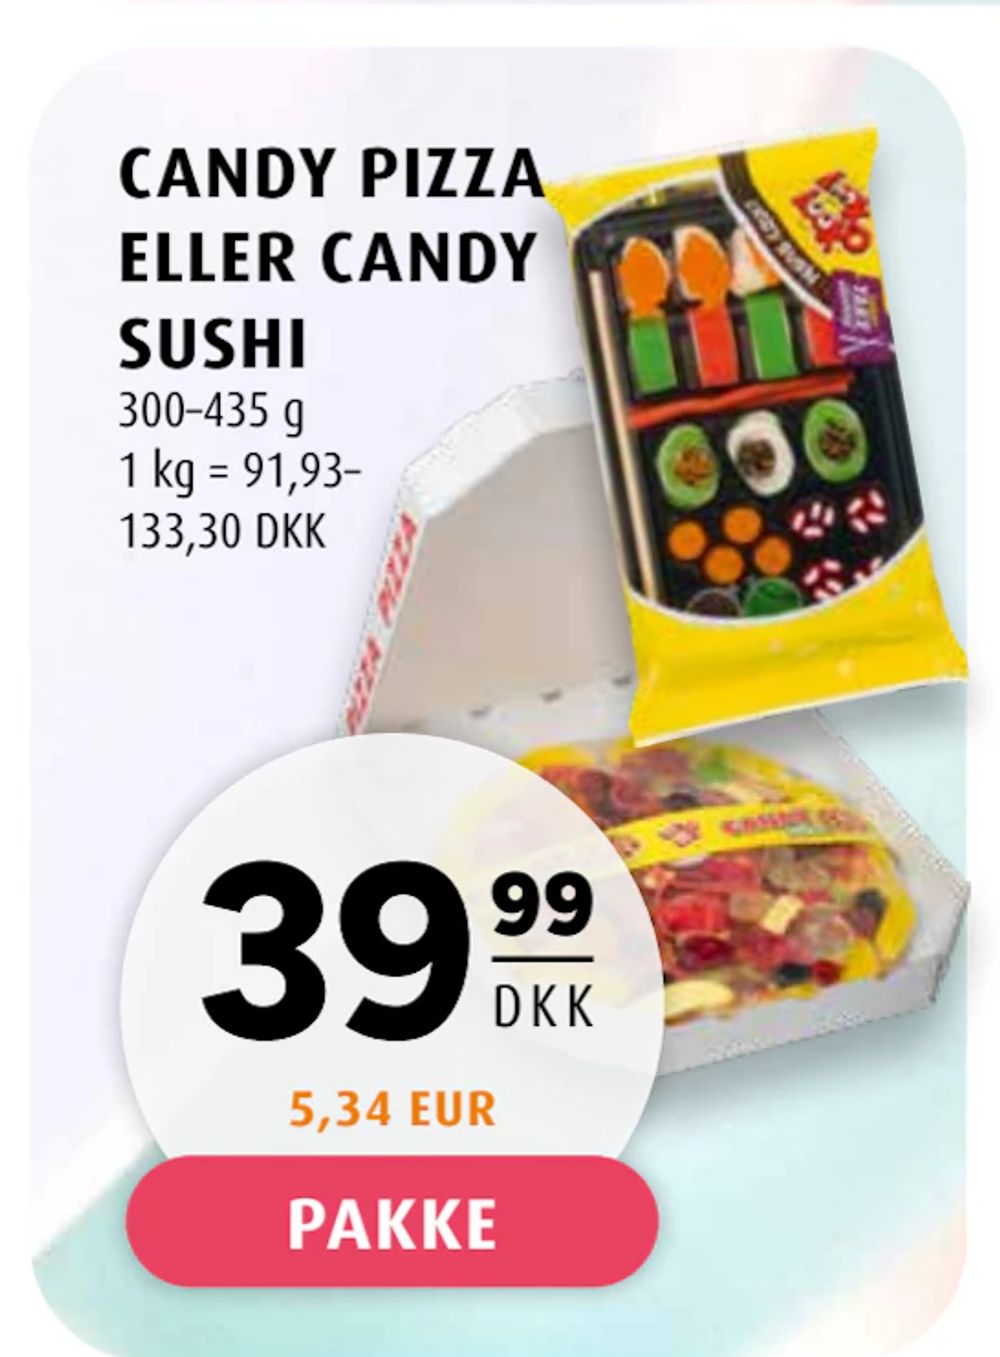 Tilbud på CANDY PIZZA ELLER CANDY SUSHI fra Scandinavian Park til 39,99 kr.